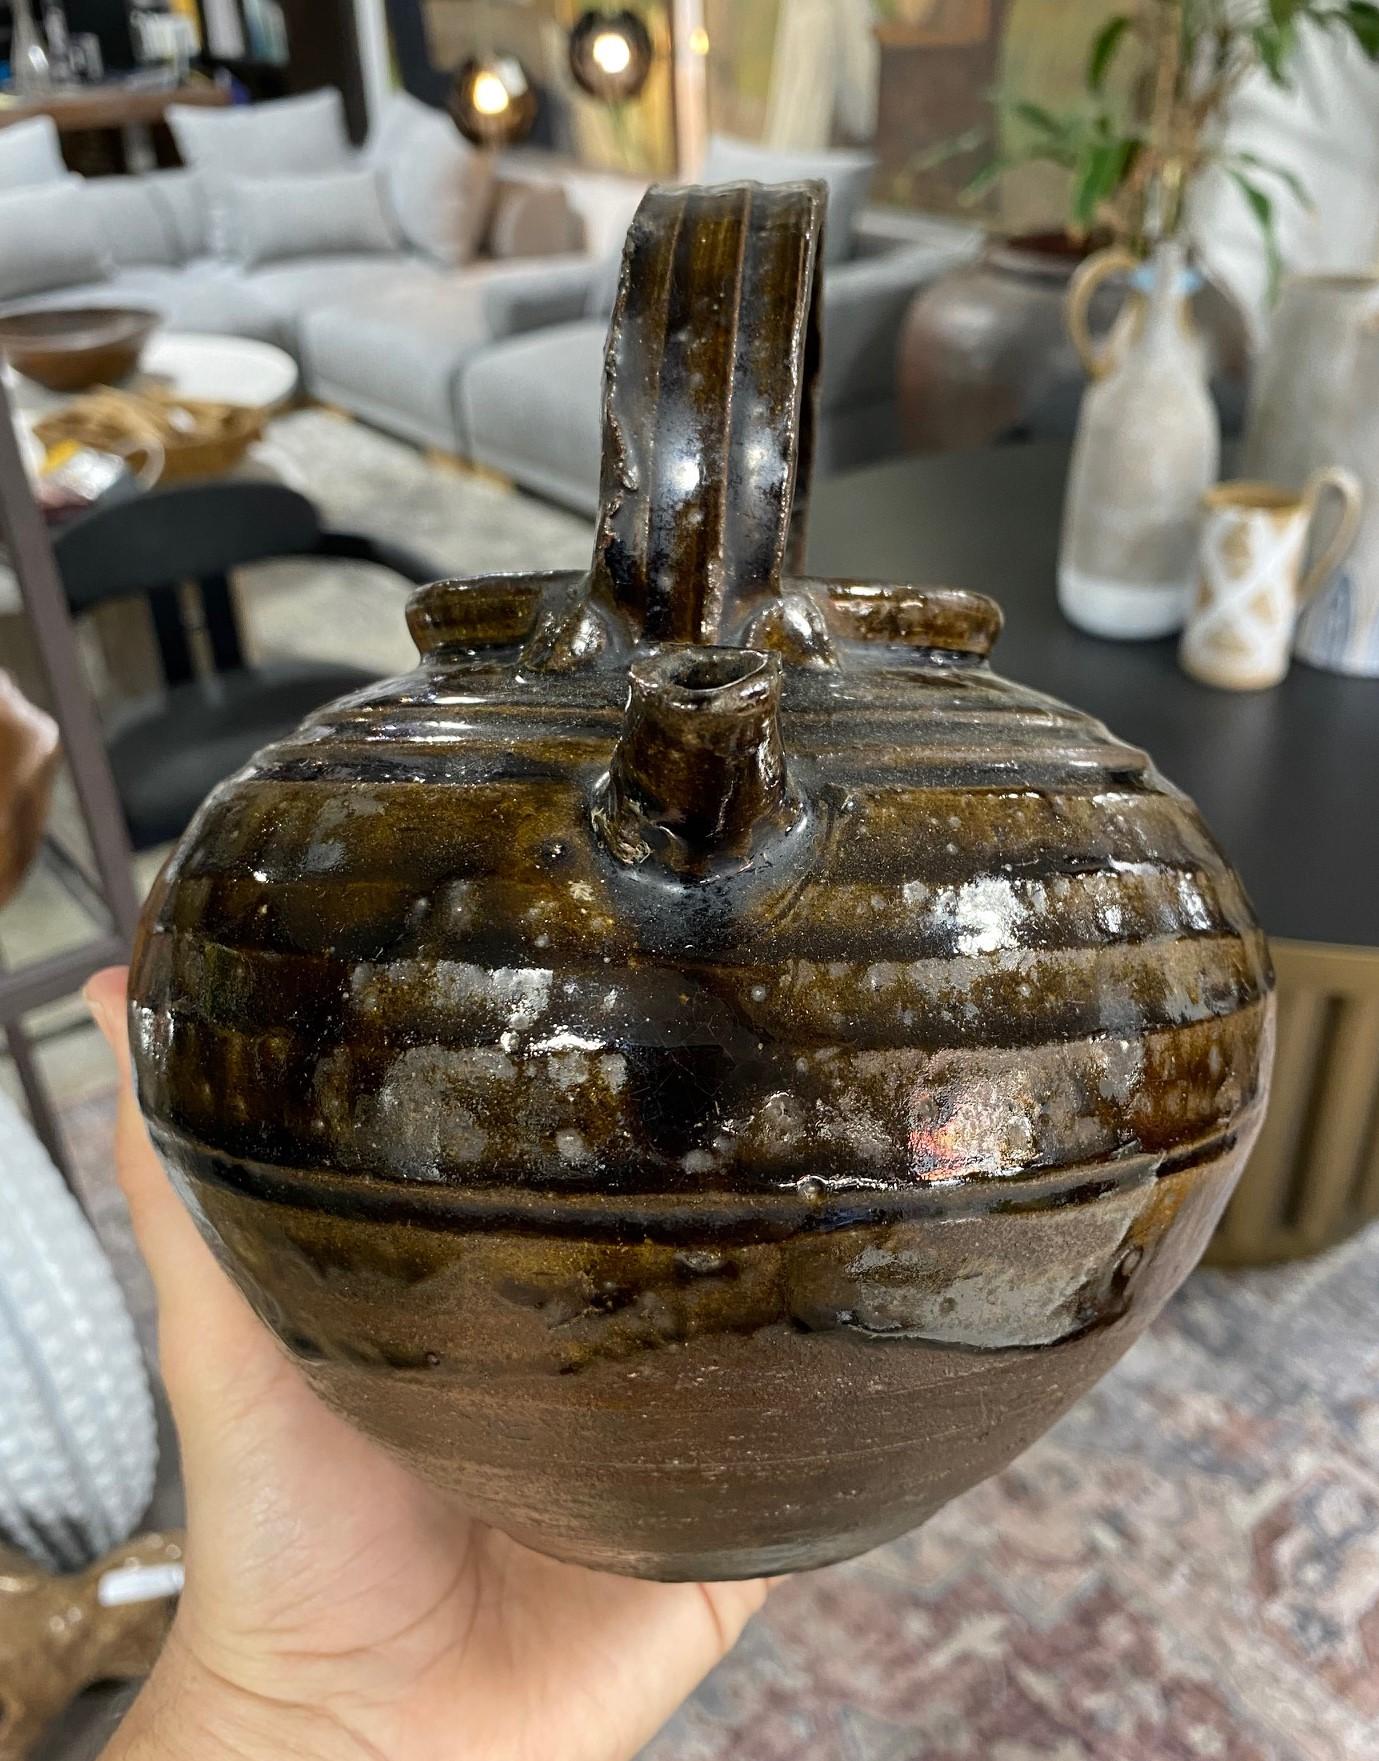 Korean, Joseon Dynasty Brown Green Glazed Stoneware Pottery Ceramic Teapot For Sale 12